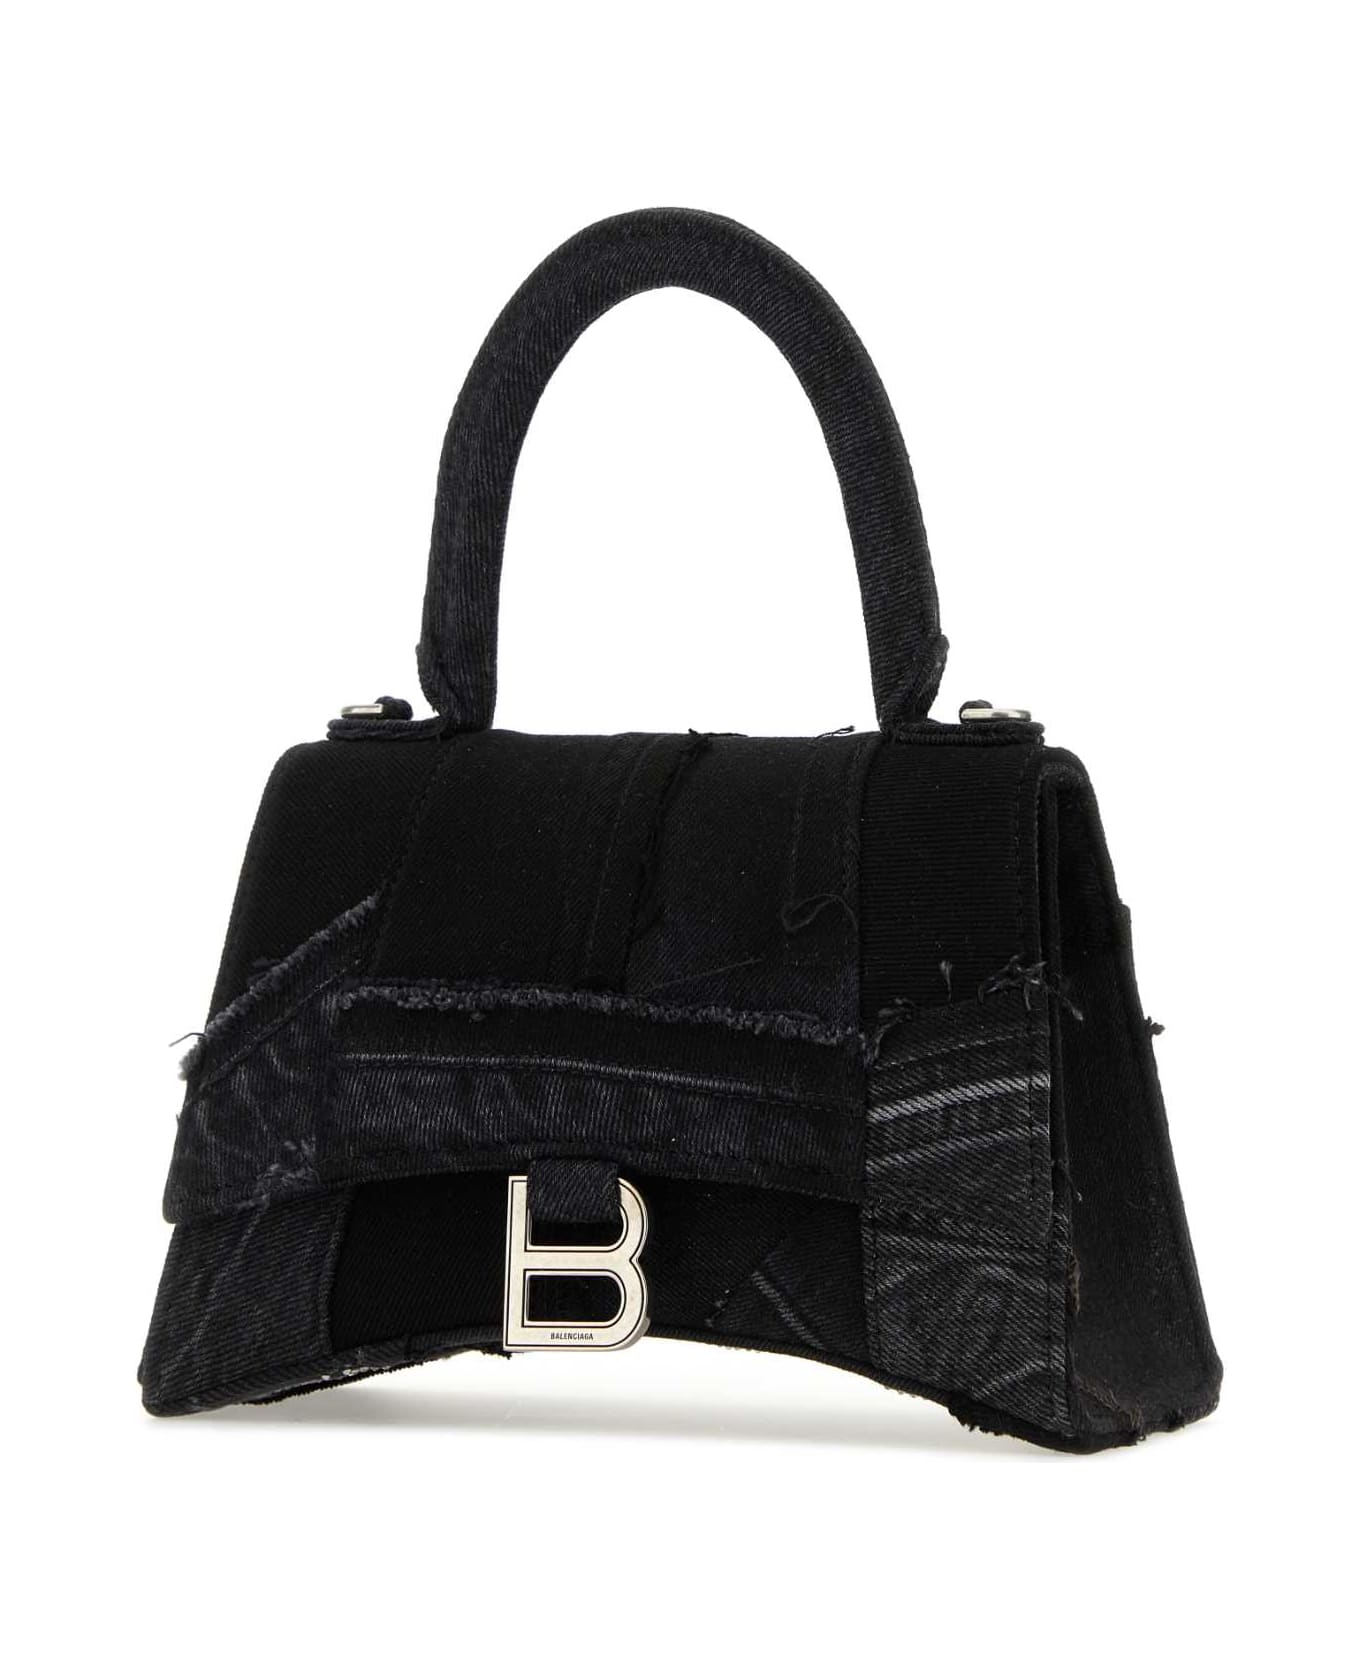 Balenciaga Black Denim Small Hourglass Handbag - 1004